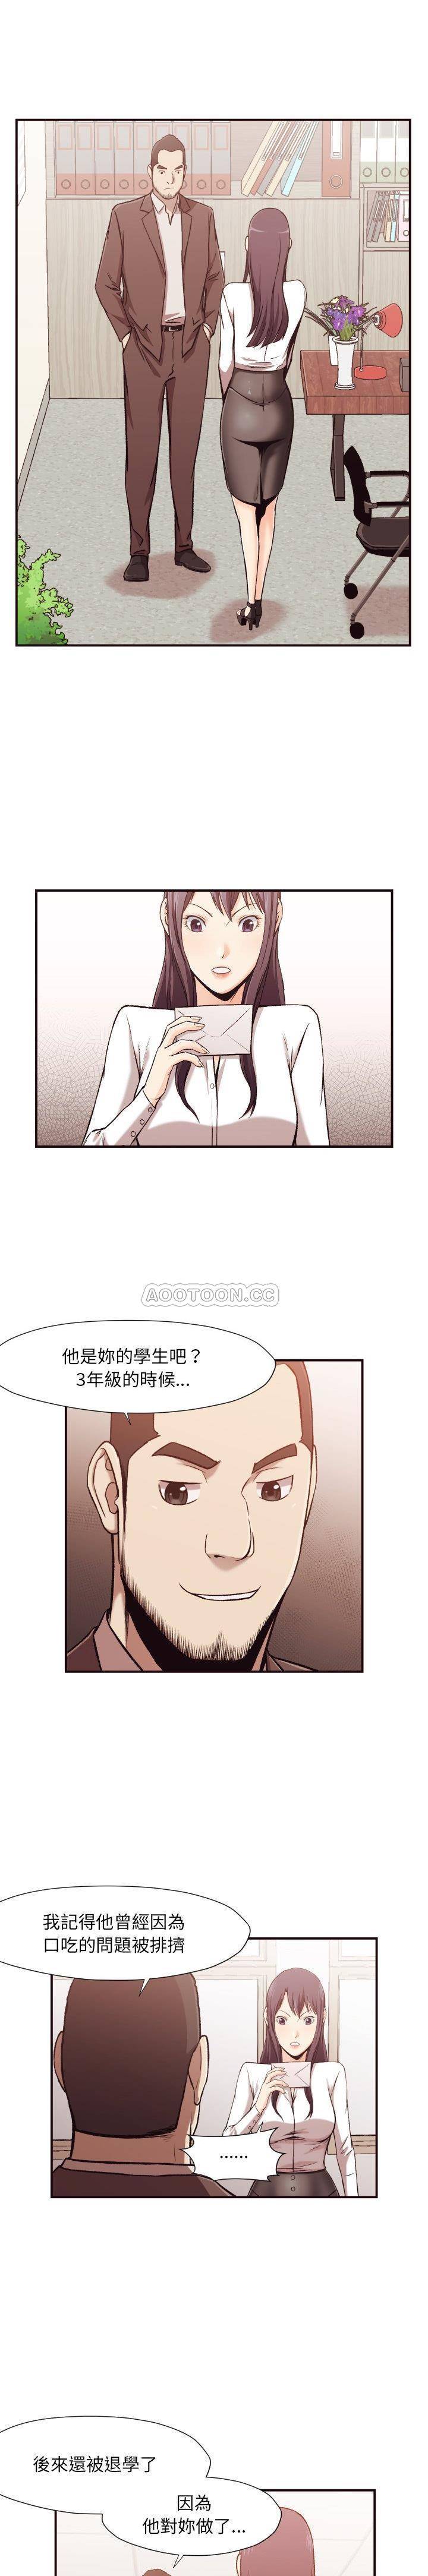 韩国污漫画 老師的黑歷史 第4话 1